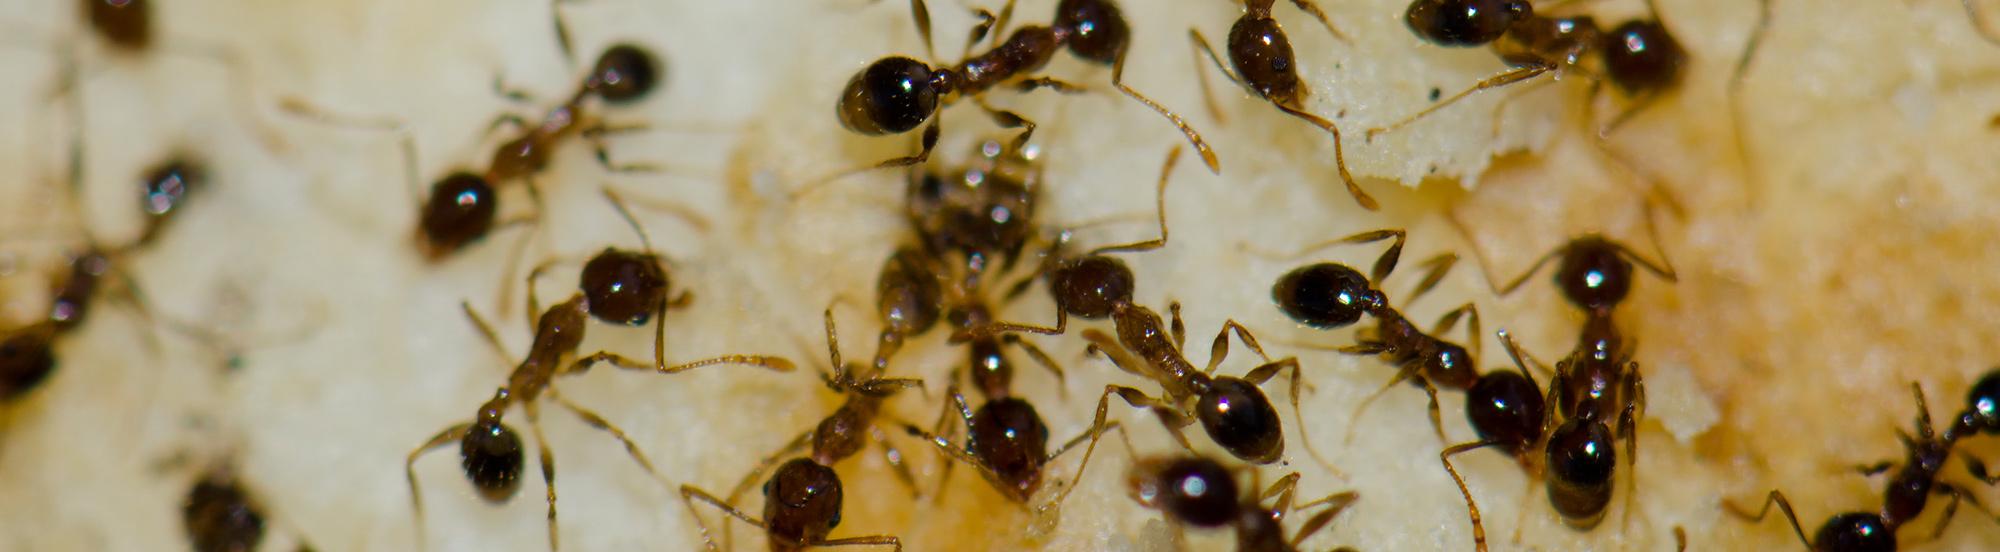 Argentine ants